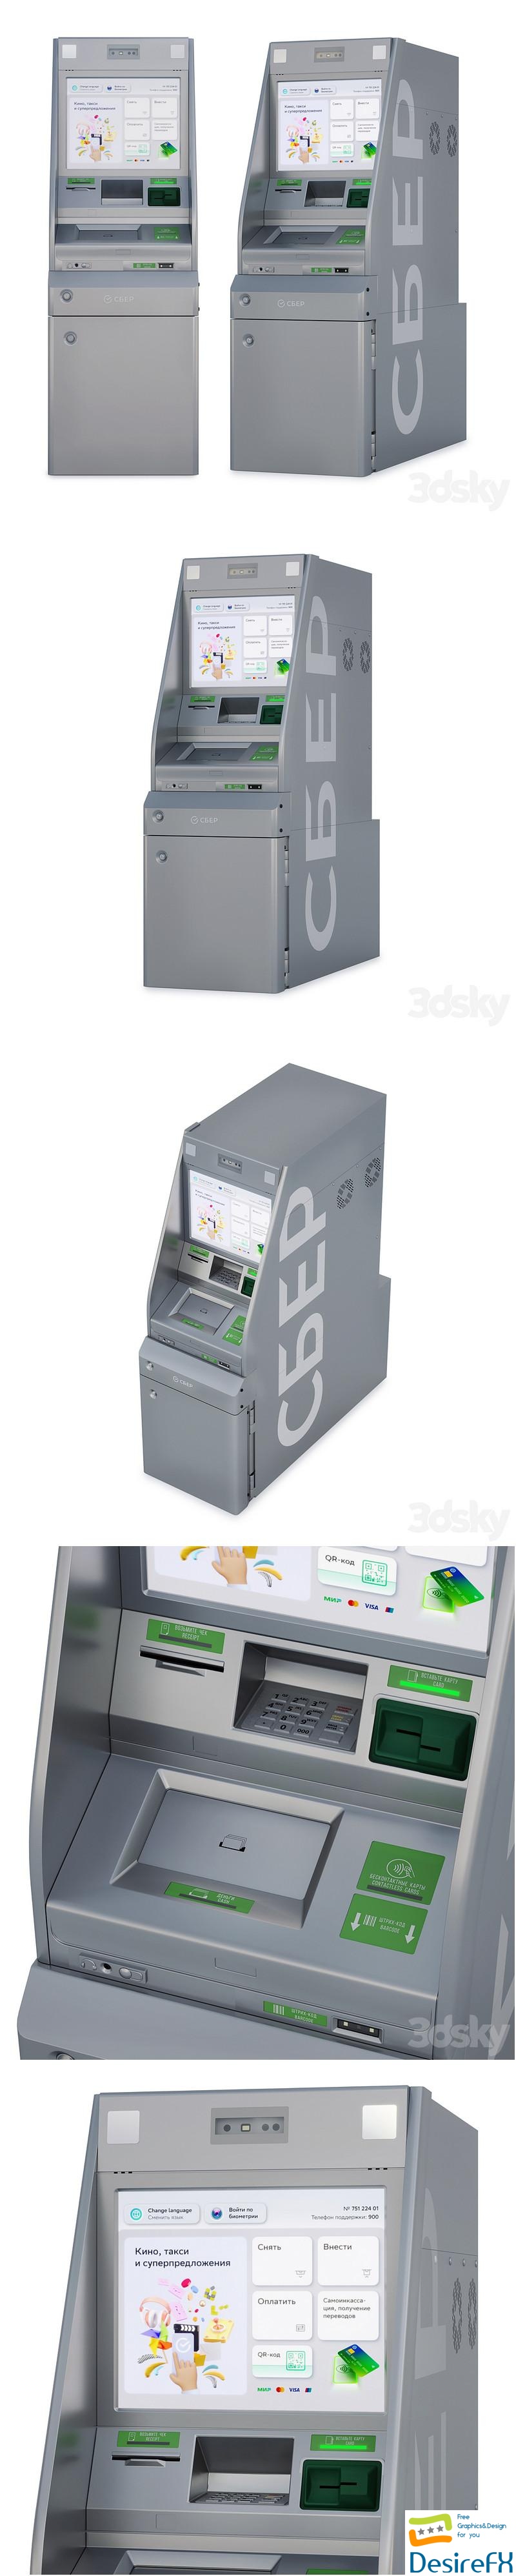 Sber ATM 3D Model